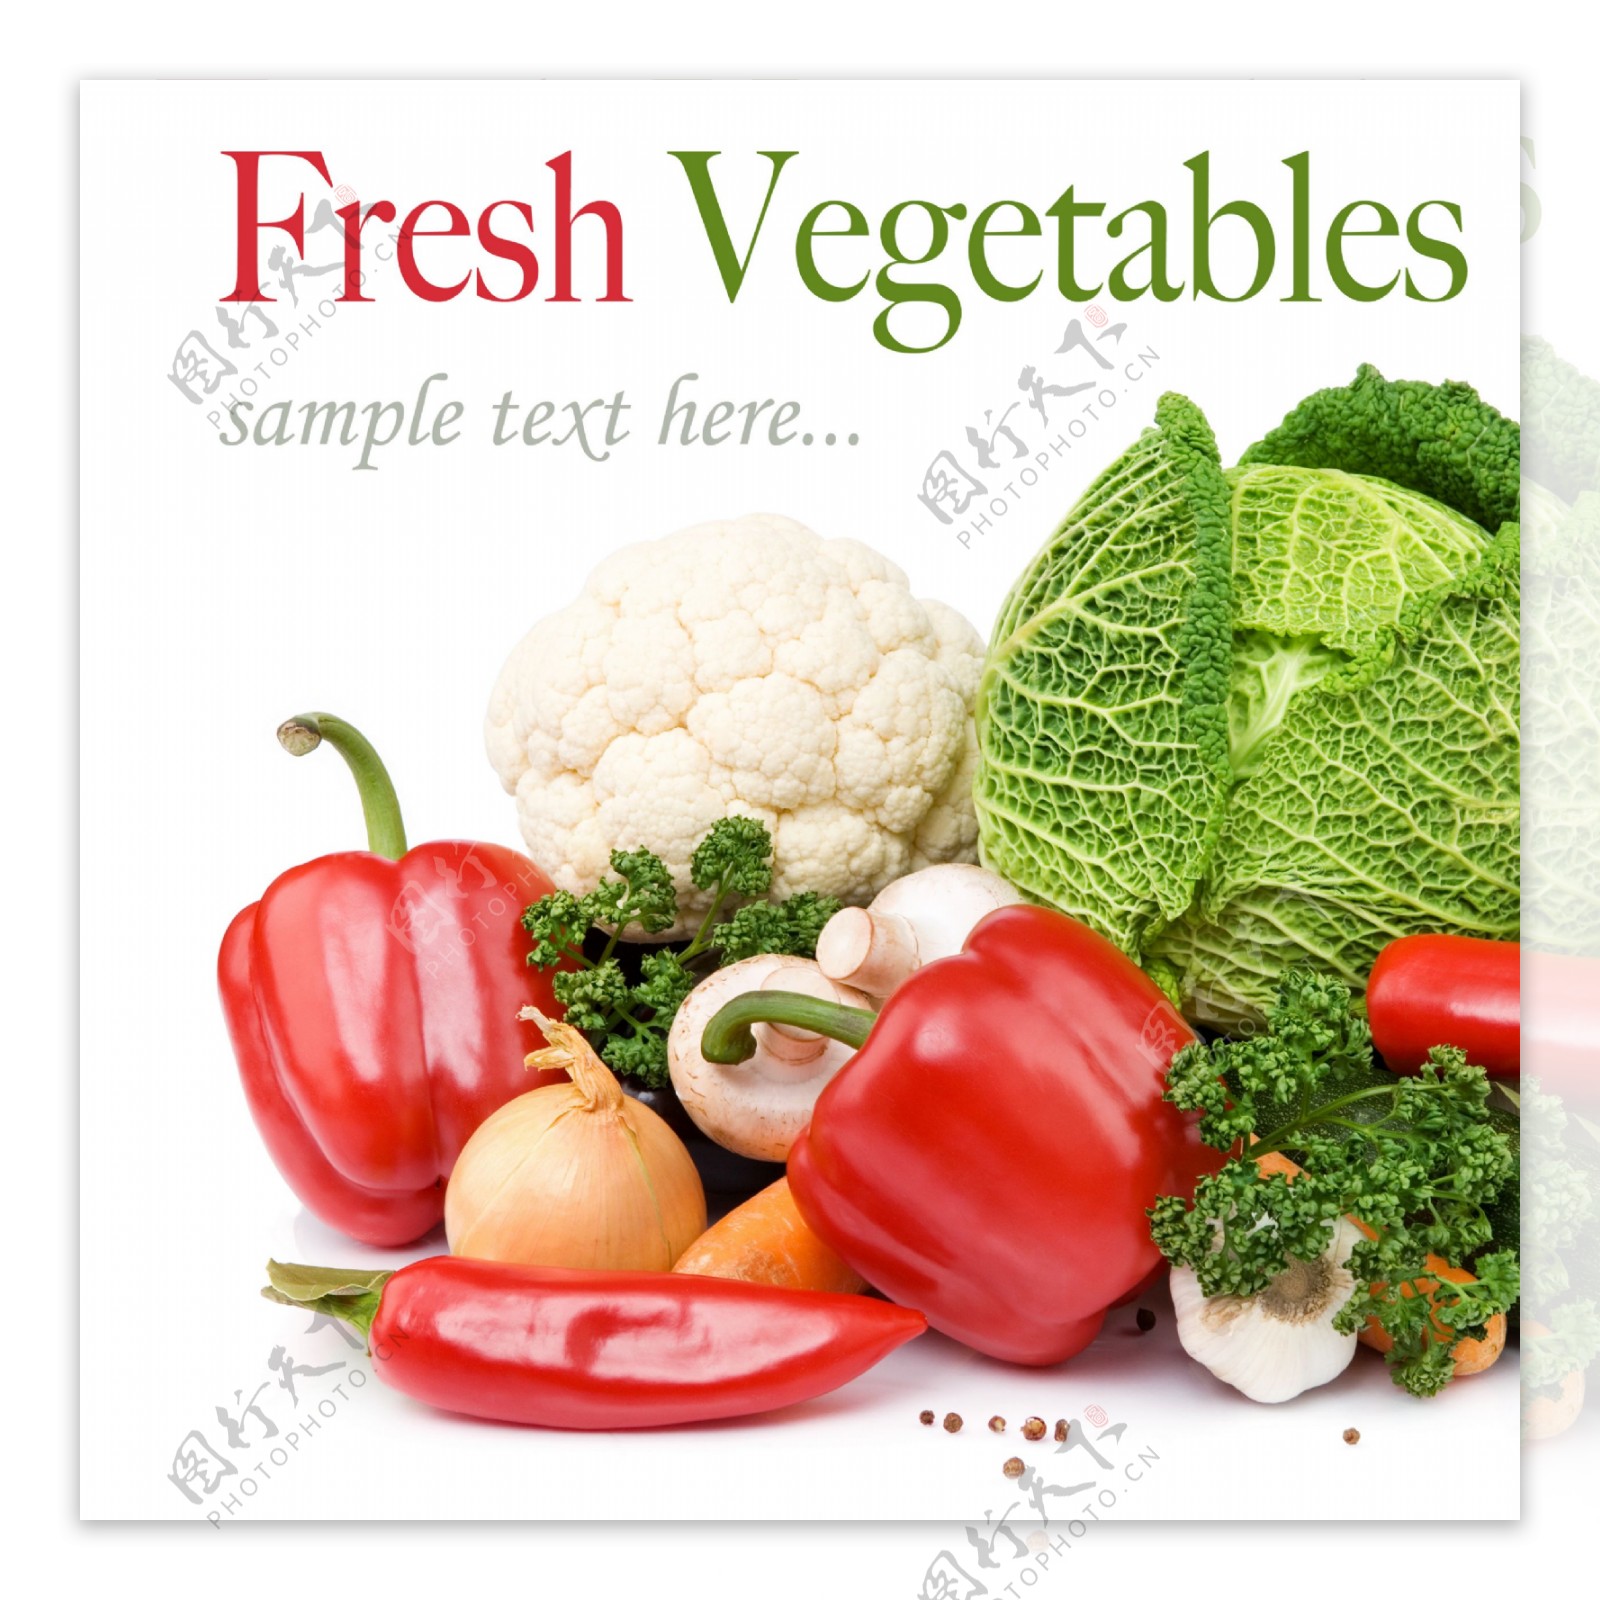 蔬菜摄影图片